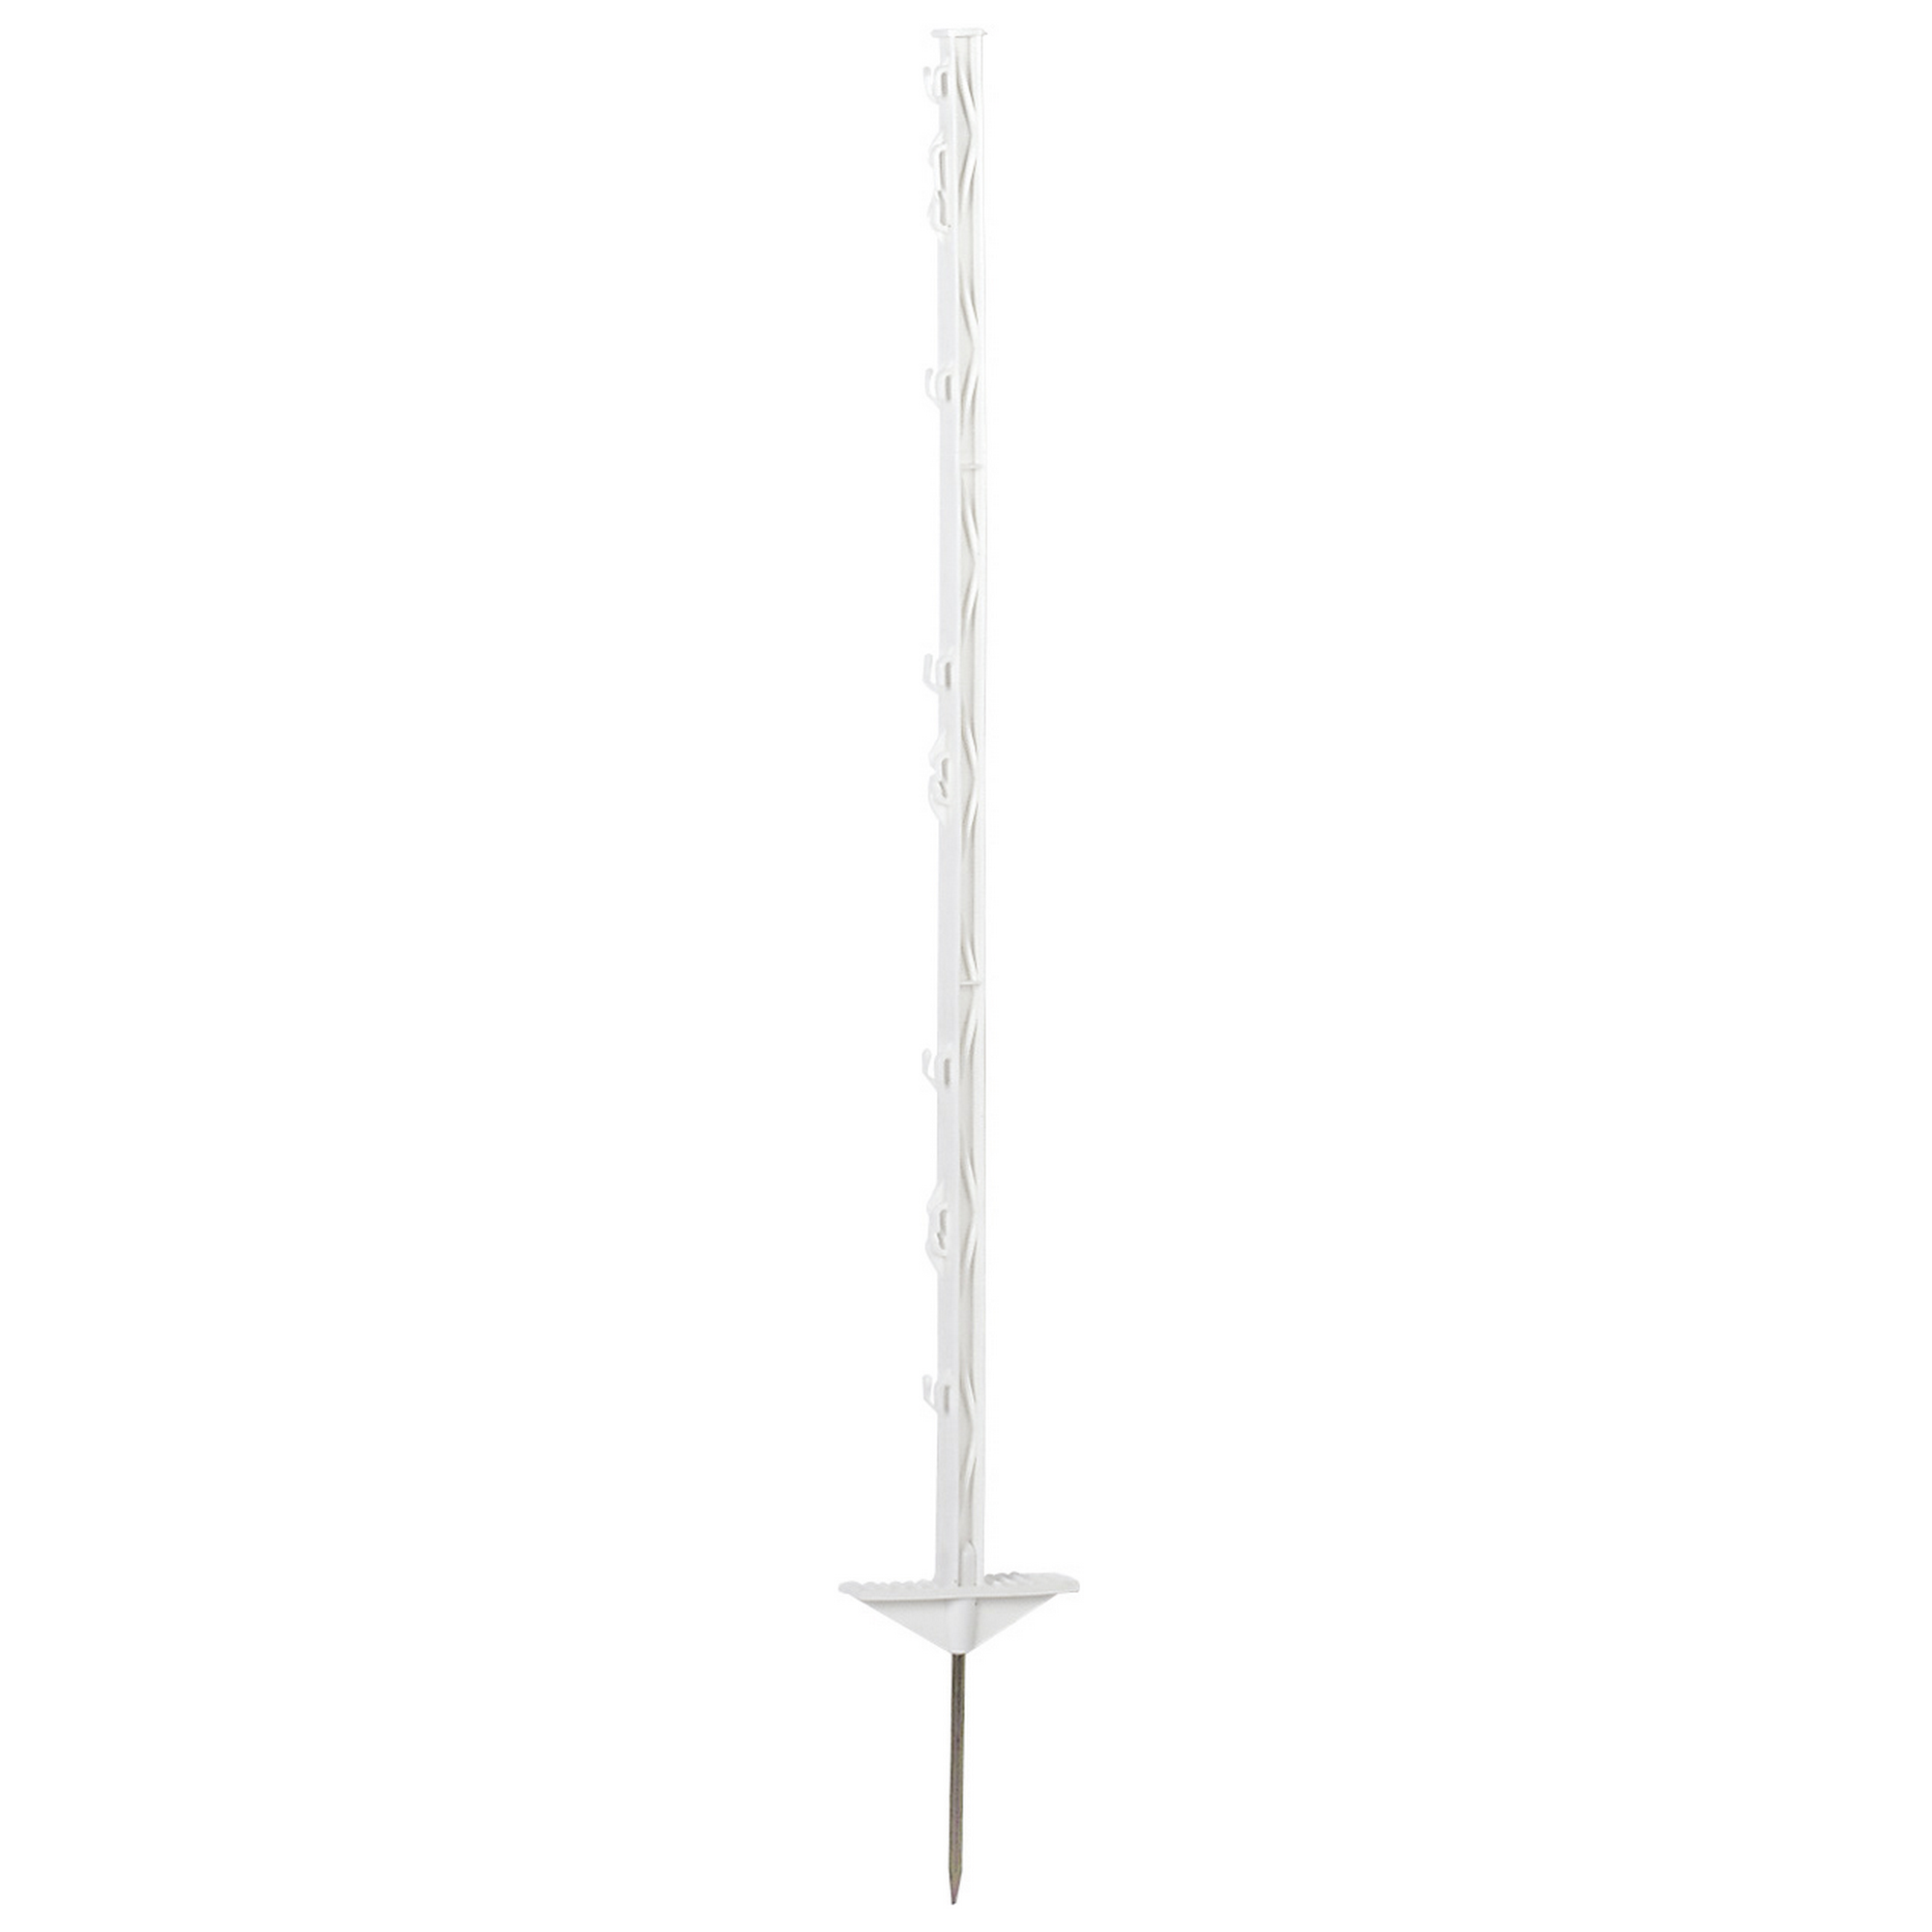 Pfahl mit Stahlspitze weiß 104 cm, 5er-Set + product picture